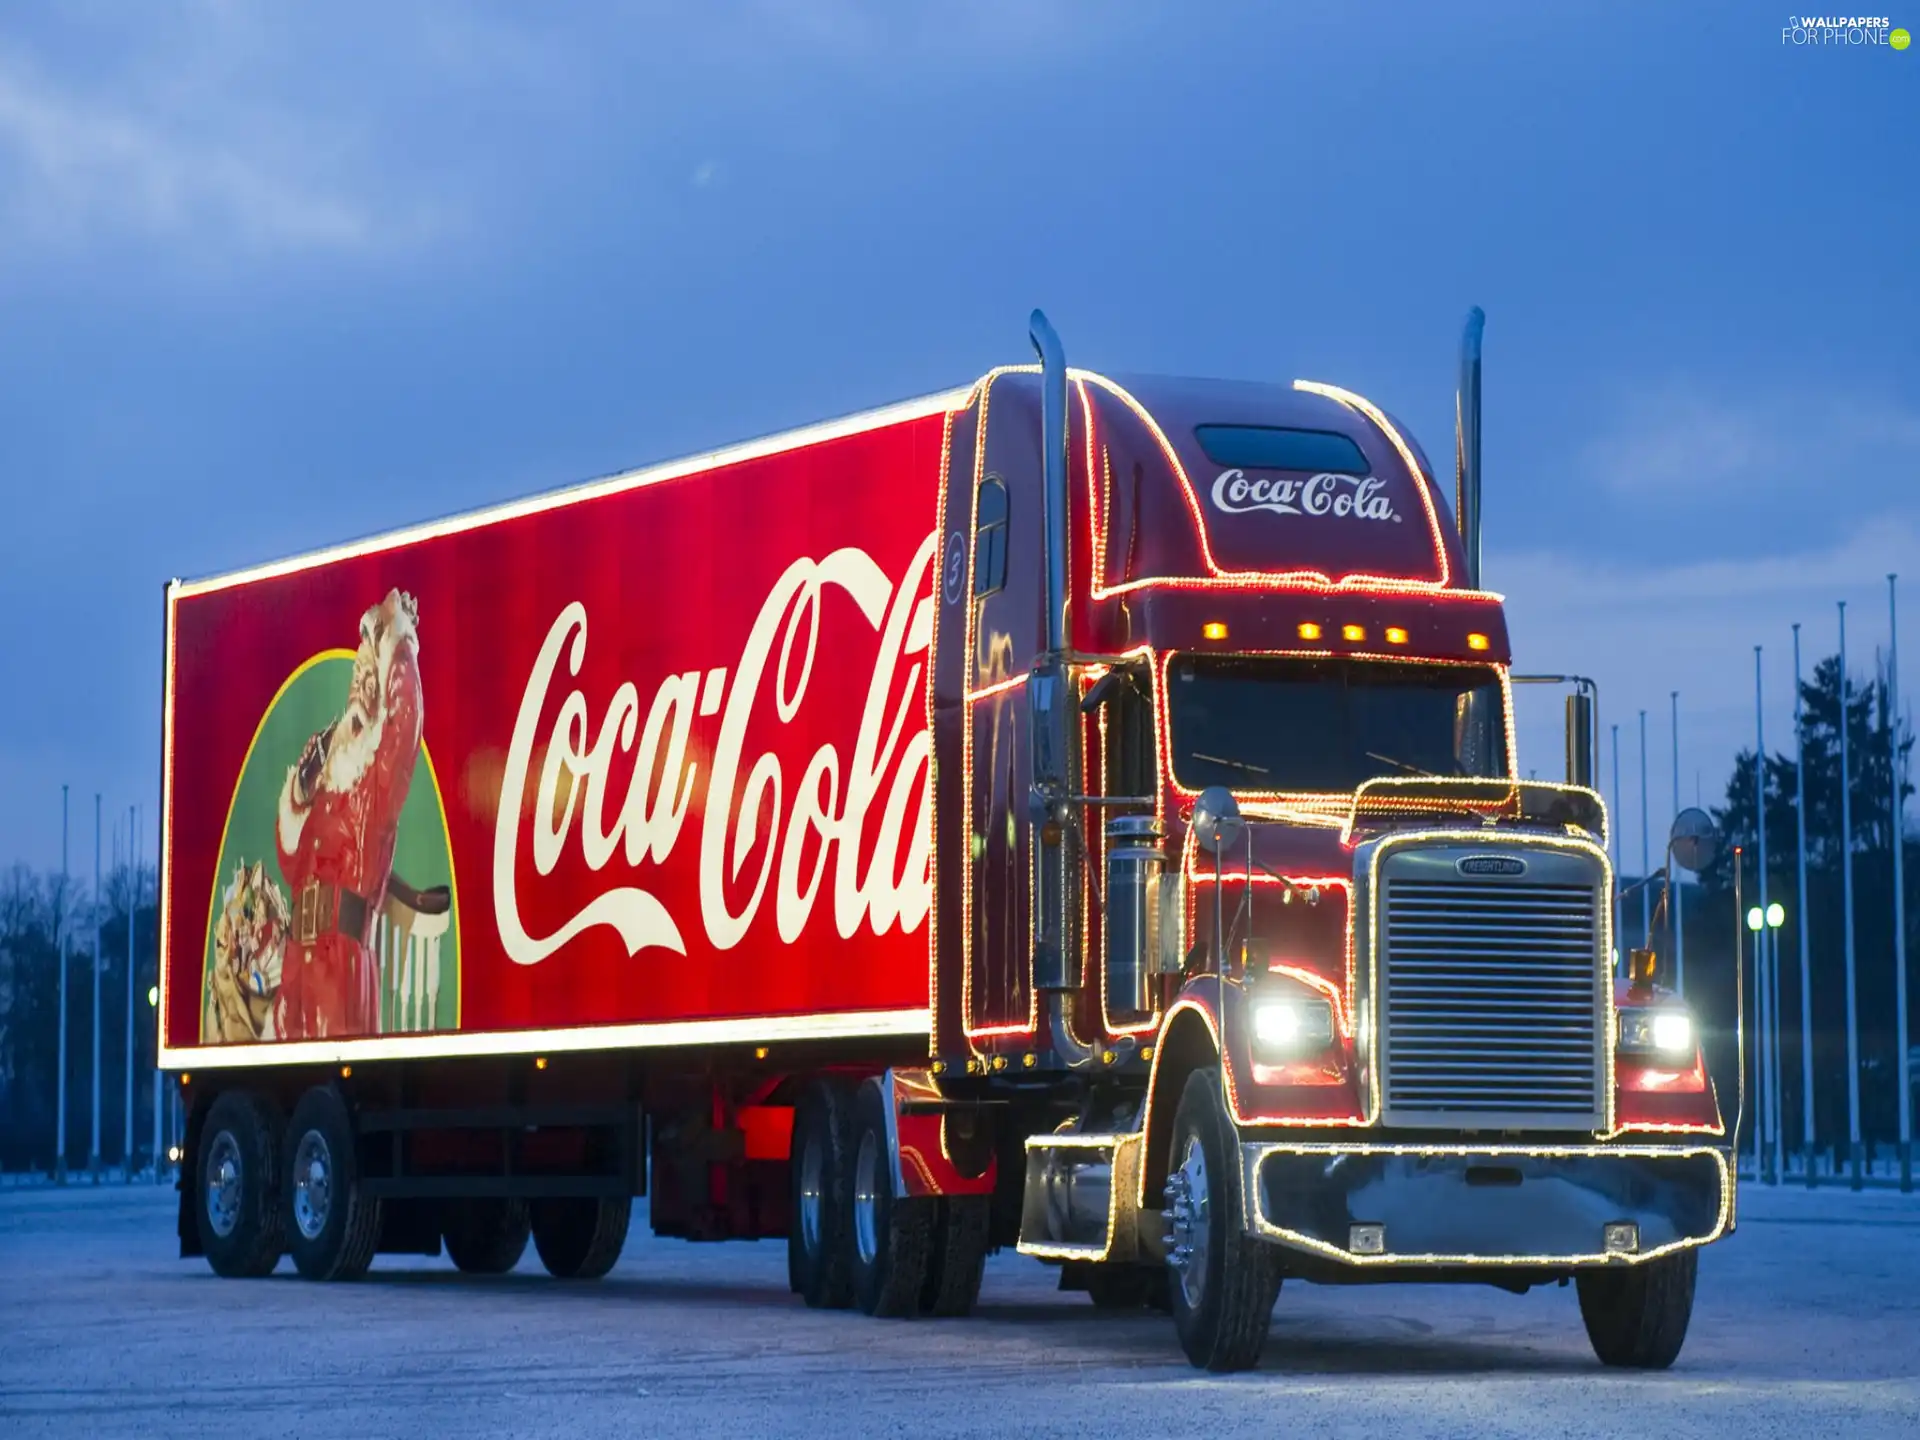 lorry, Coca-Cola